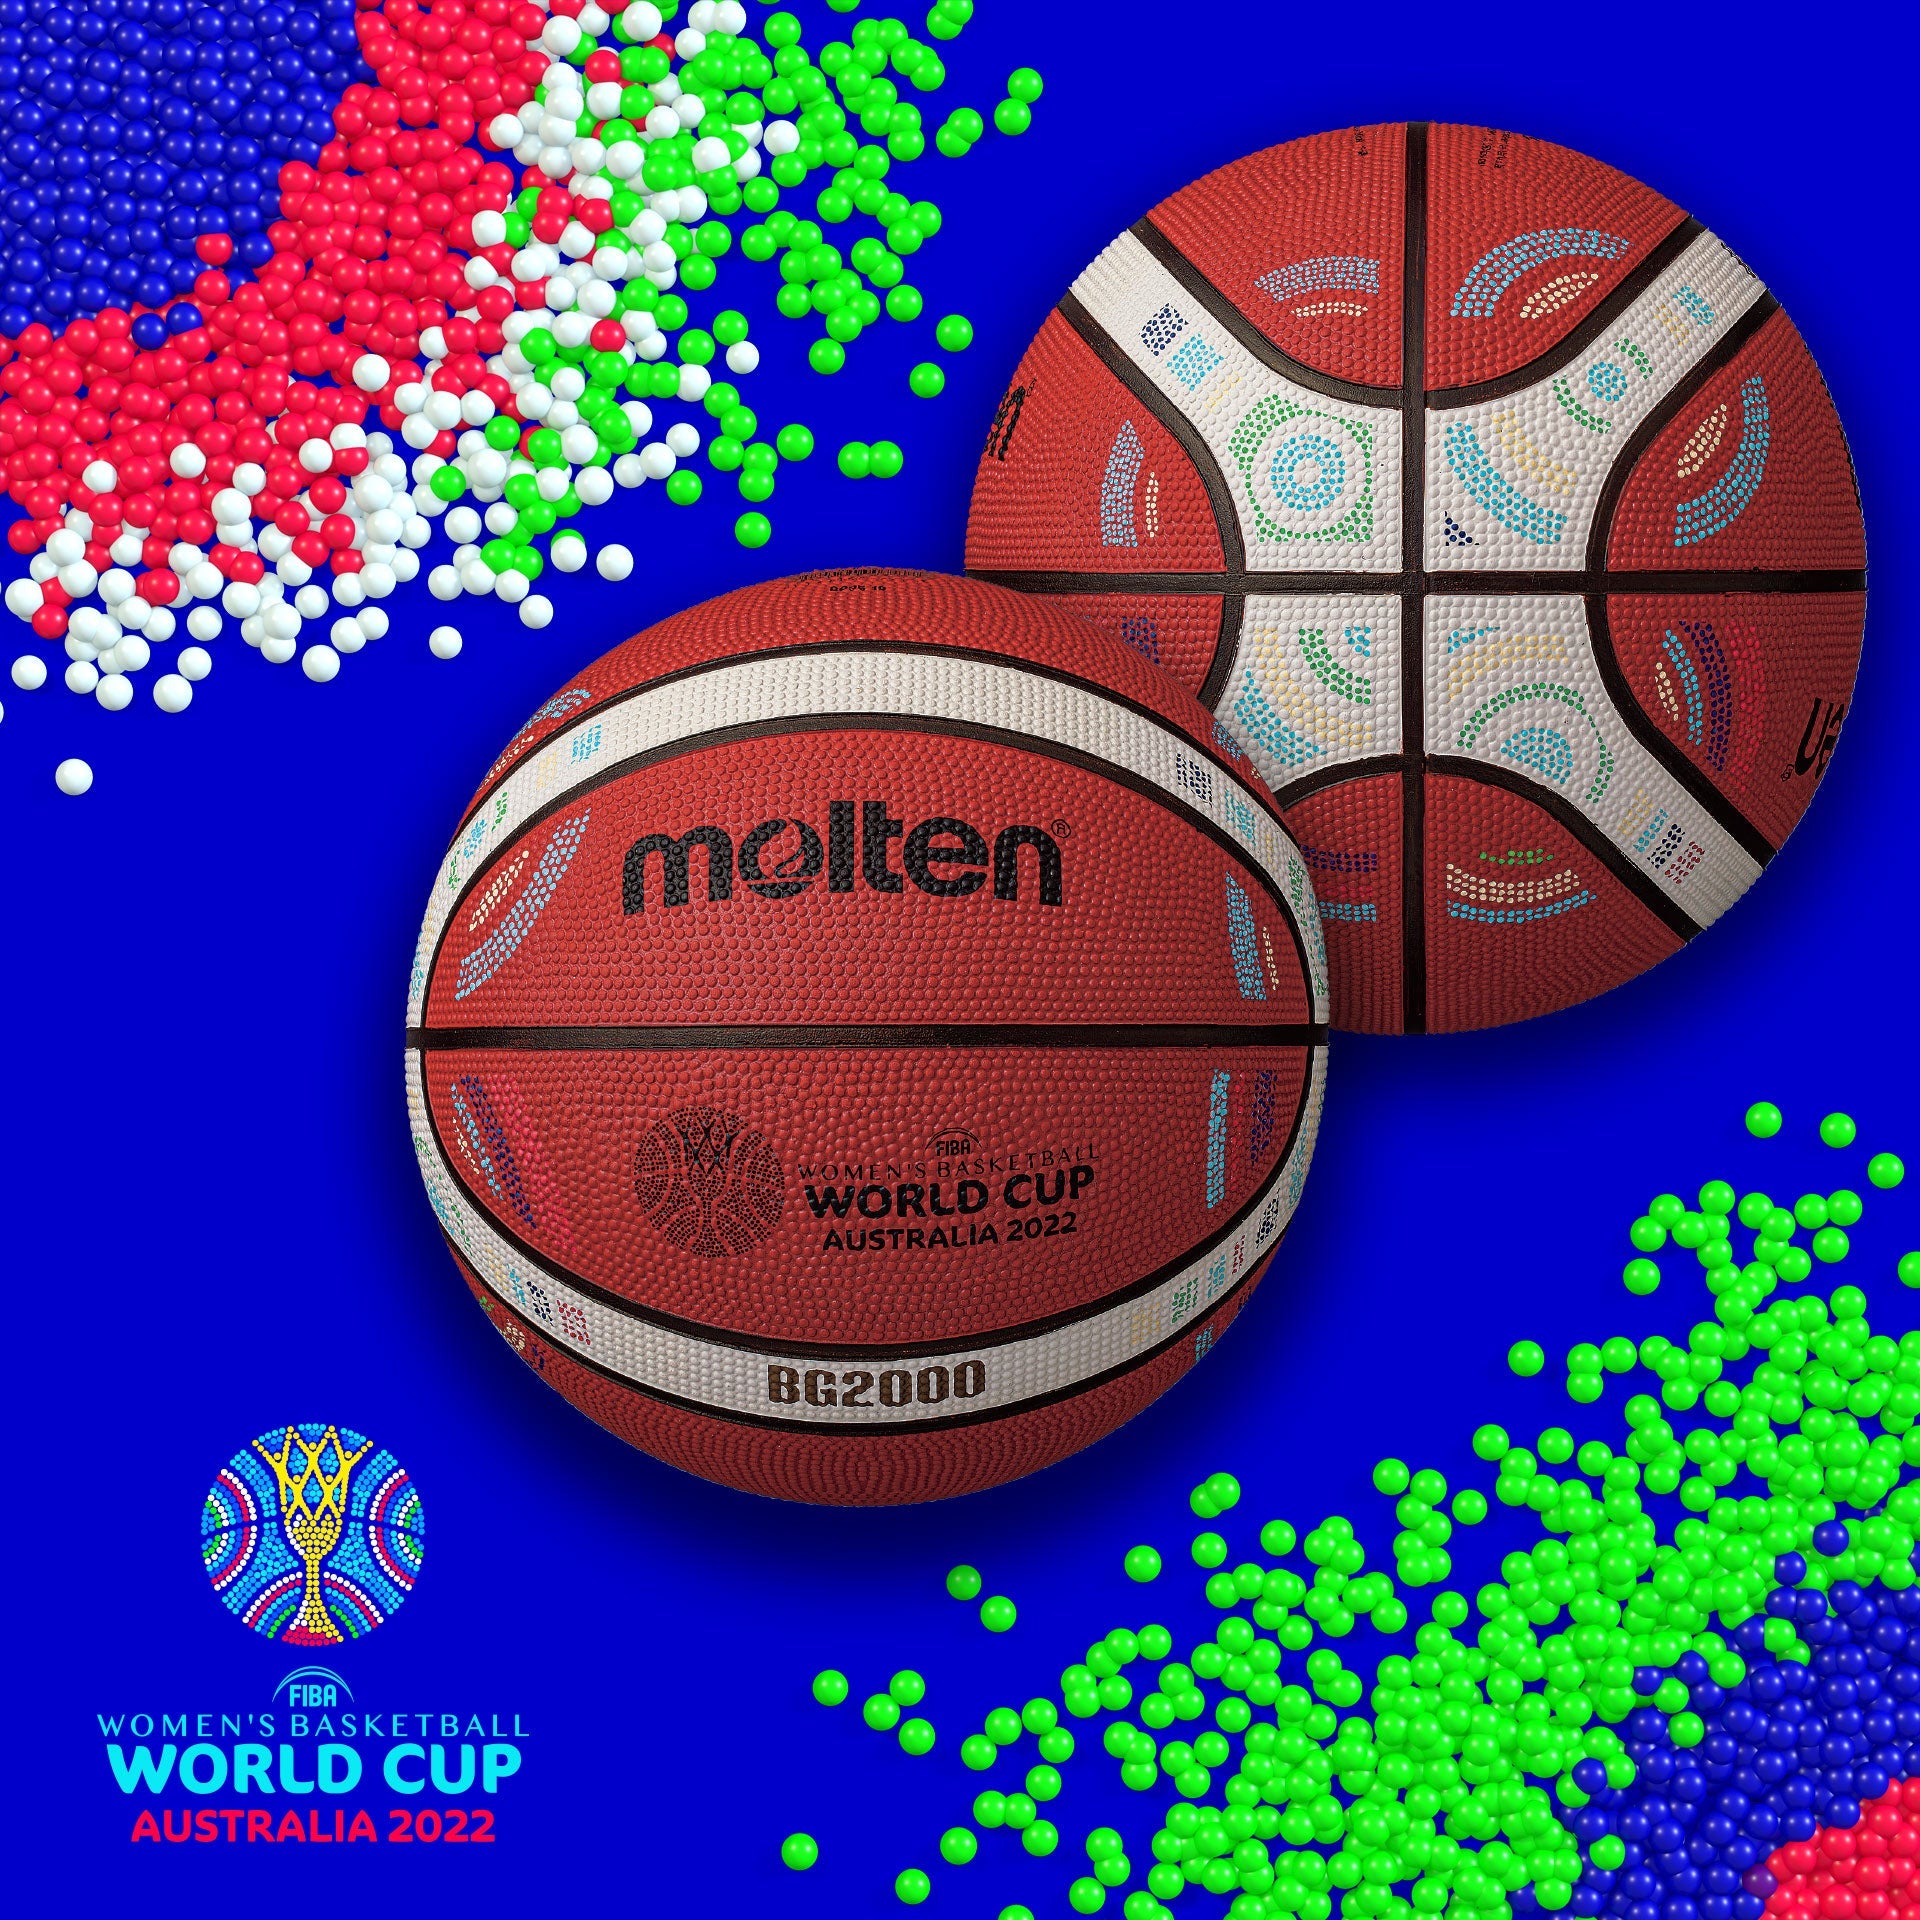 FIBA バスケットボールワールドカップ 2023 決勝戦専用公式試合球